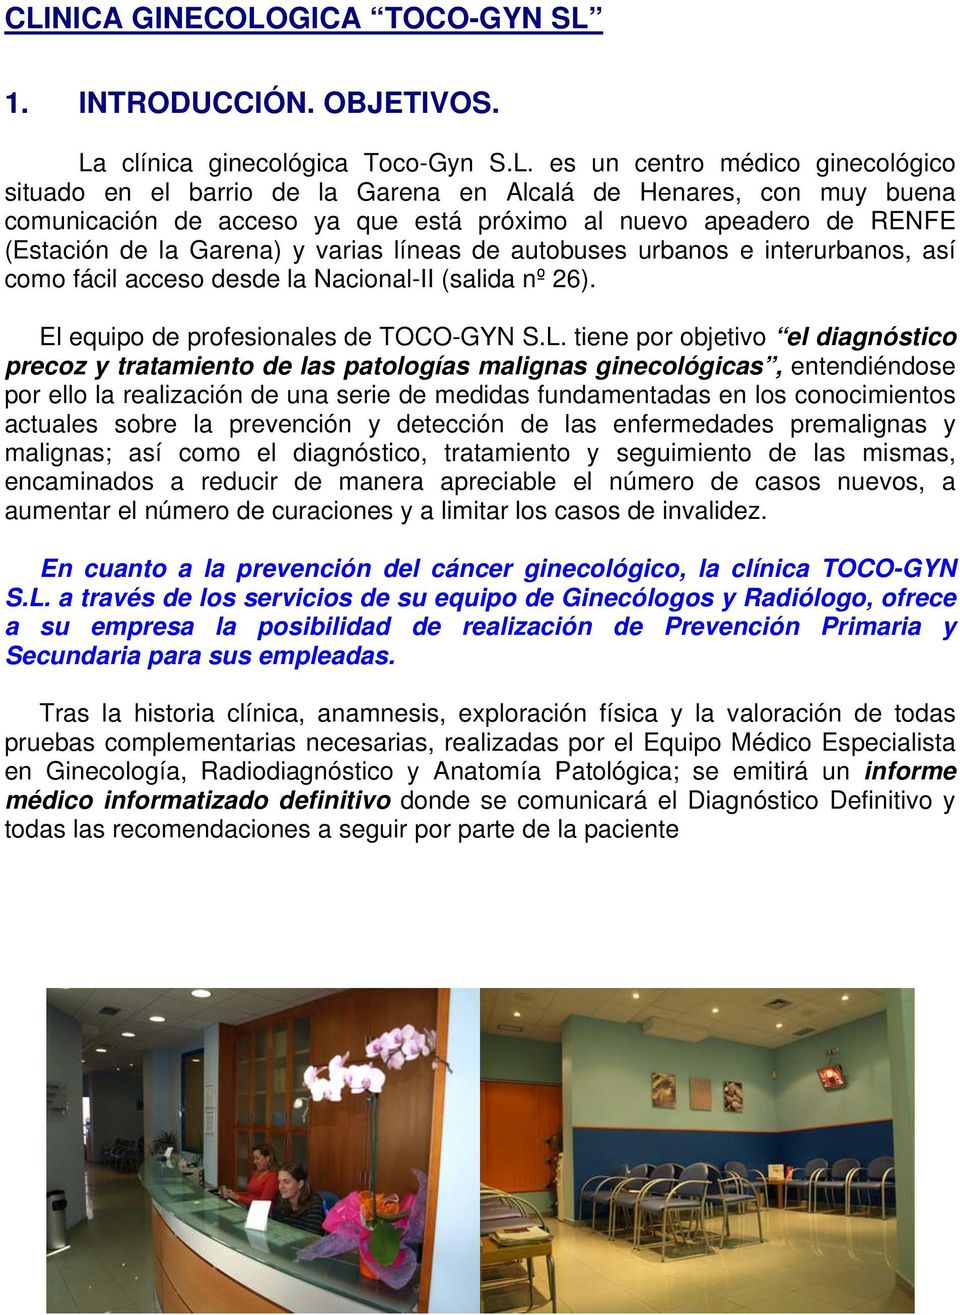 es un centro médico ginecológico situado en el barrio de la Garena en Alcalá de Henares, con muy buena comunicación de acceso ya que está próximo al nuevo apeadero de RENFE (Estación de la Garena) y